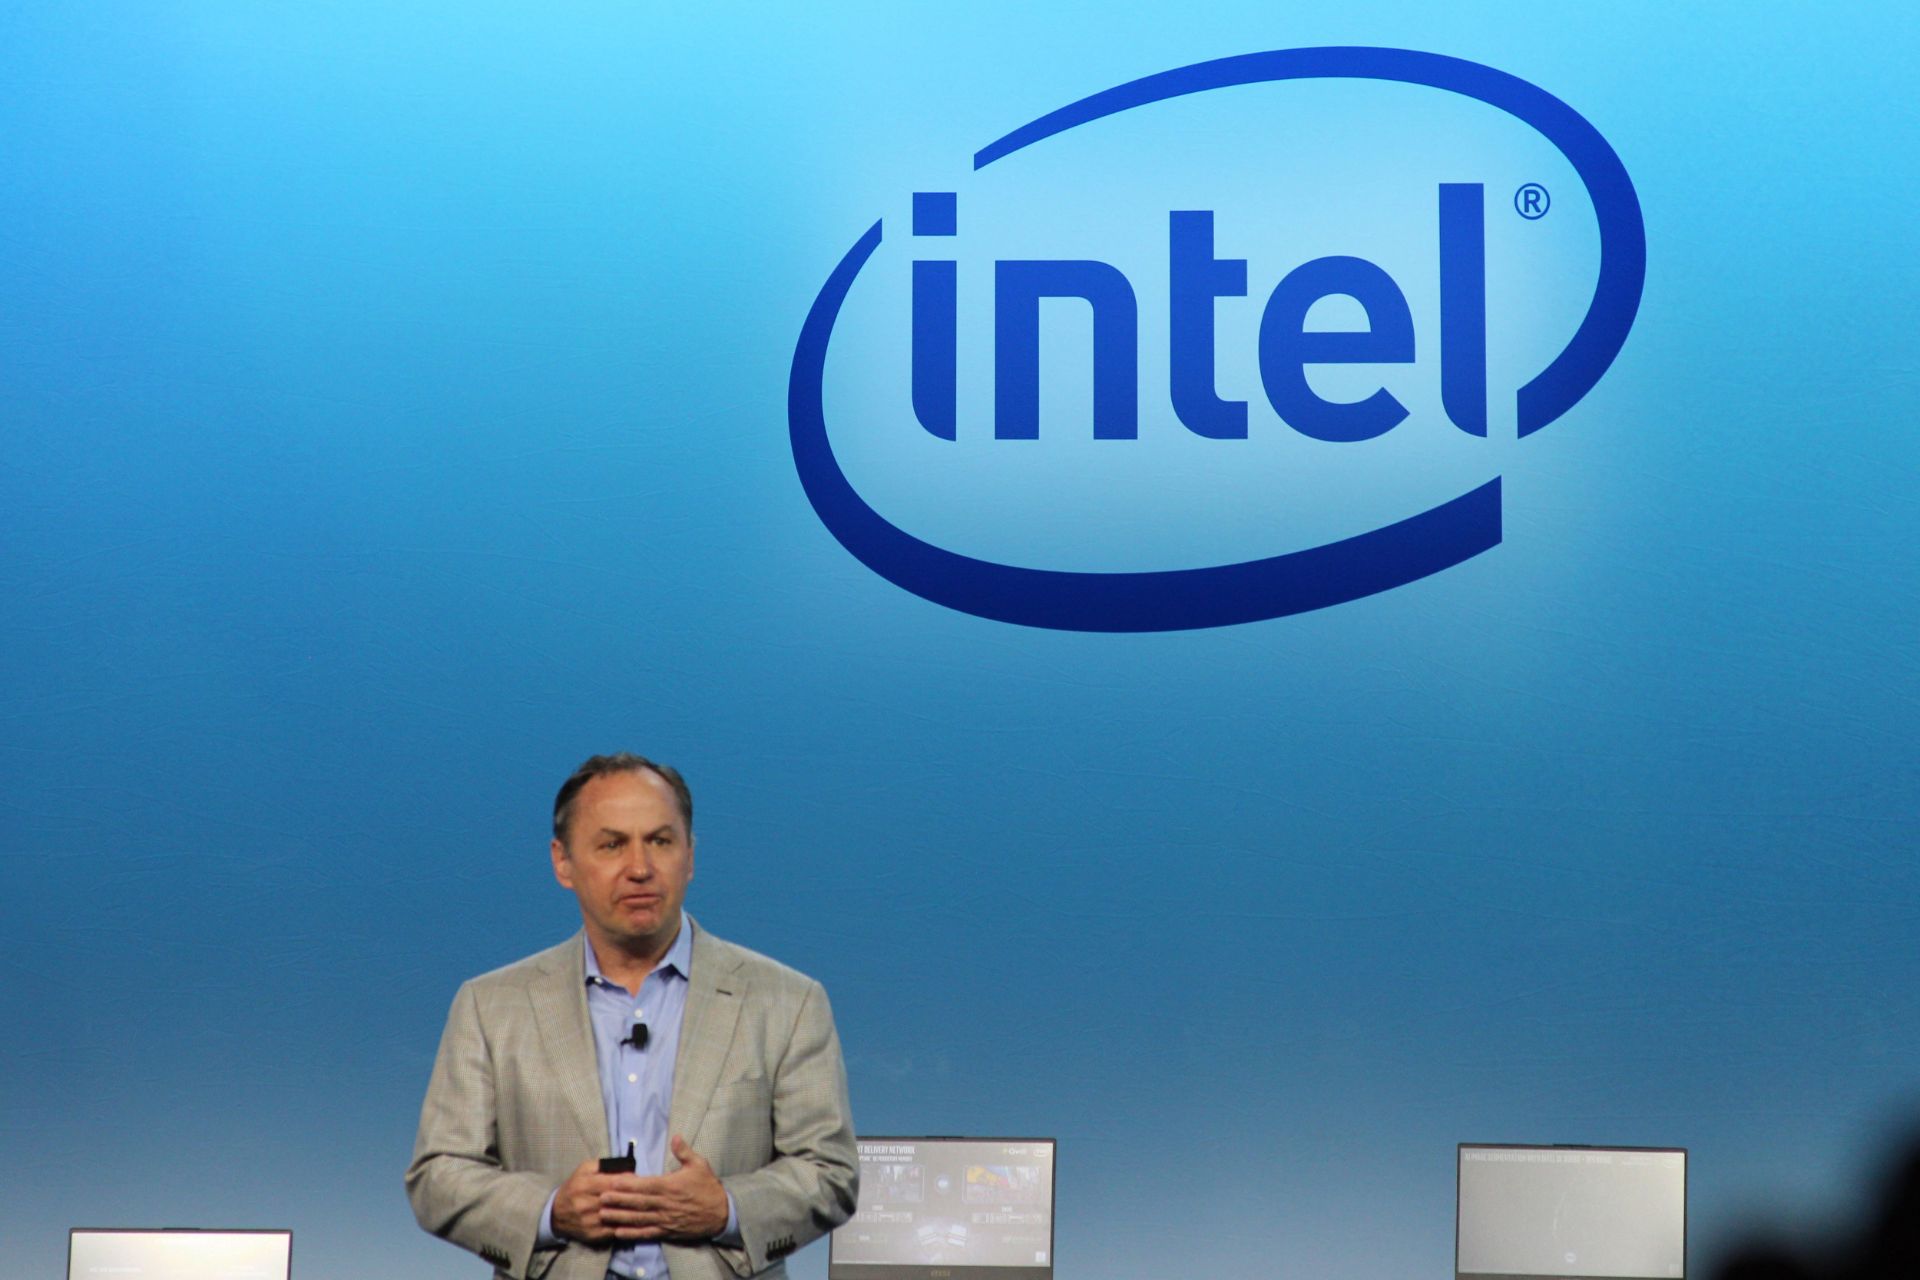 مرجع متخصصين ايران باب سوان / Bob Swan مديرعامل اينتل در جلسه توجيهي گزارش مالي فصل چهارم 2020 لوگو Intel در پشت